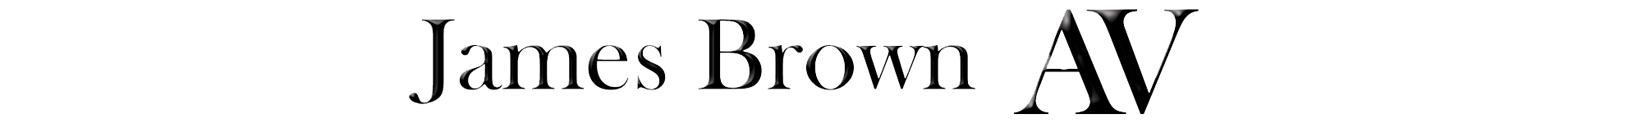 James Brown AV